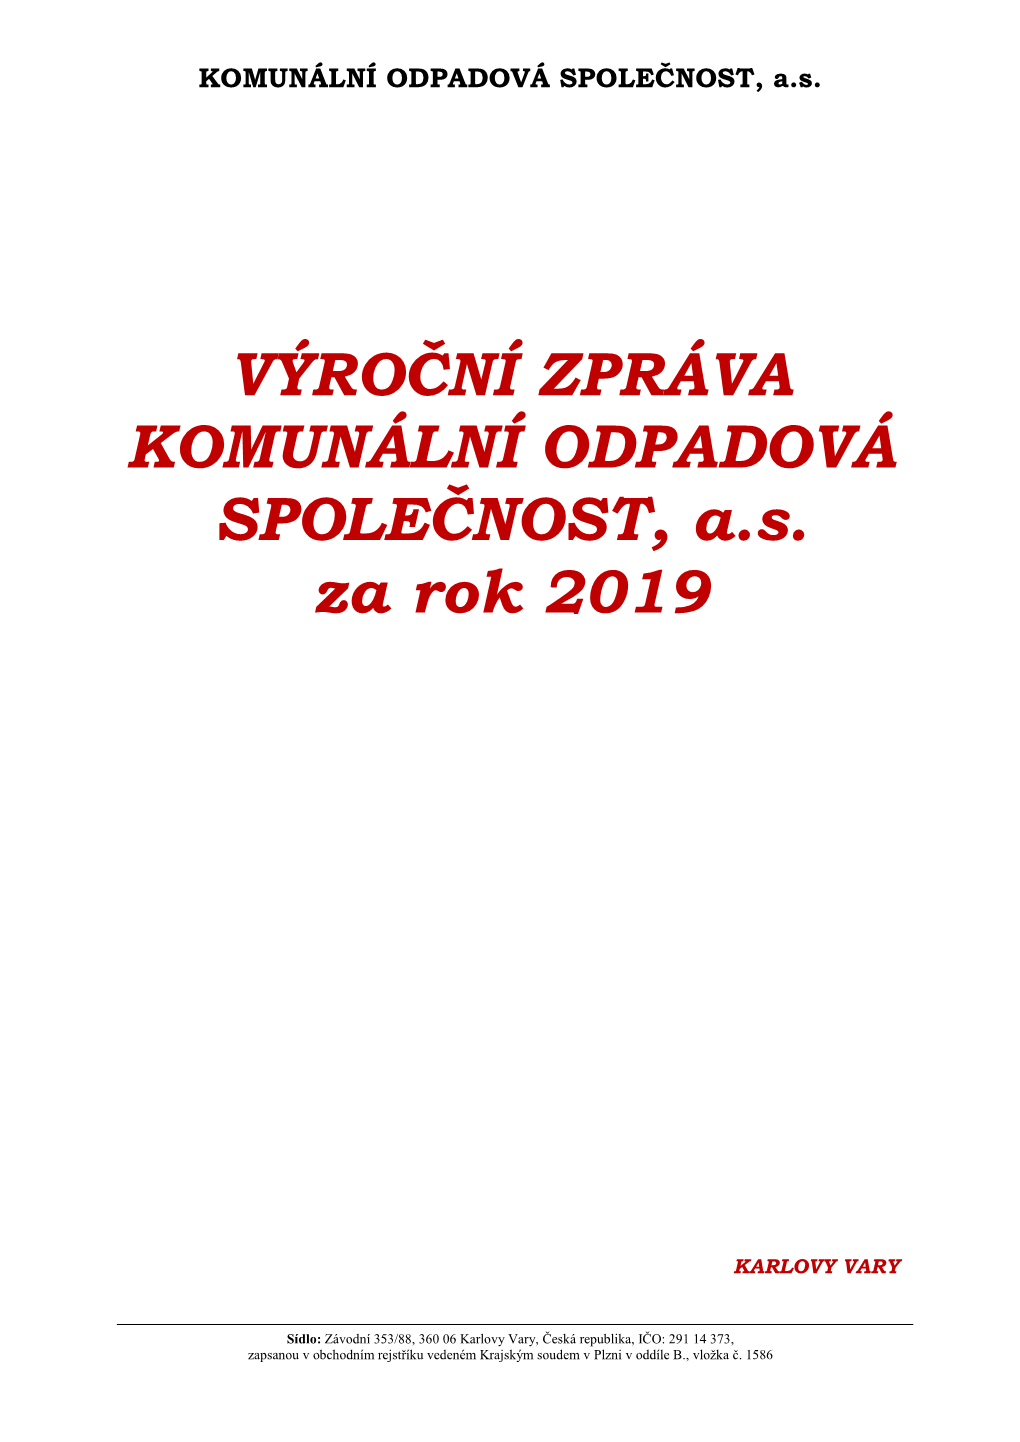 Výroční Zpráva Společnosti KOS, A.S. 2019